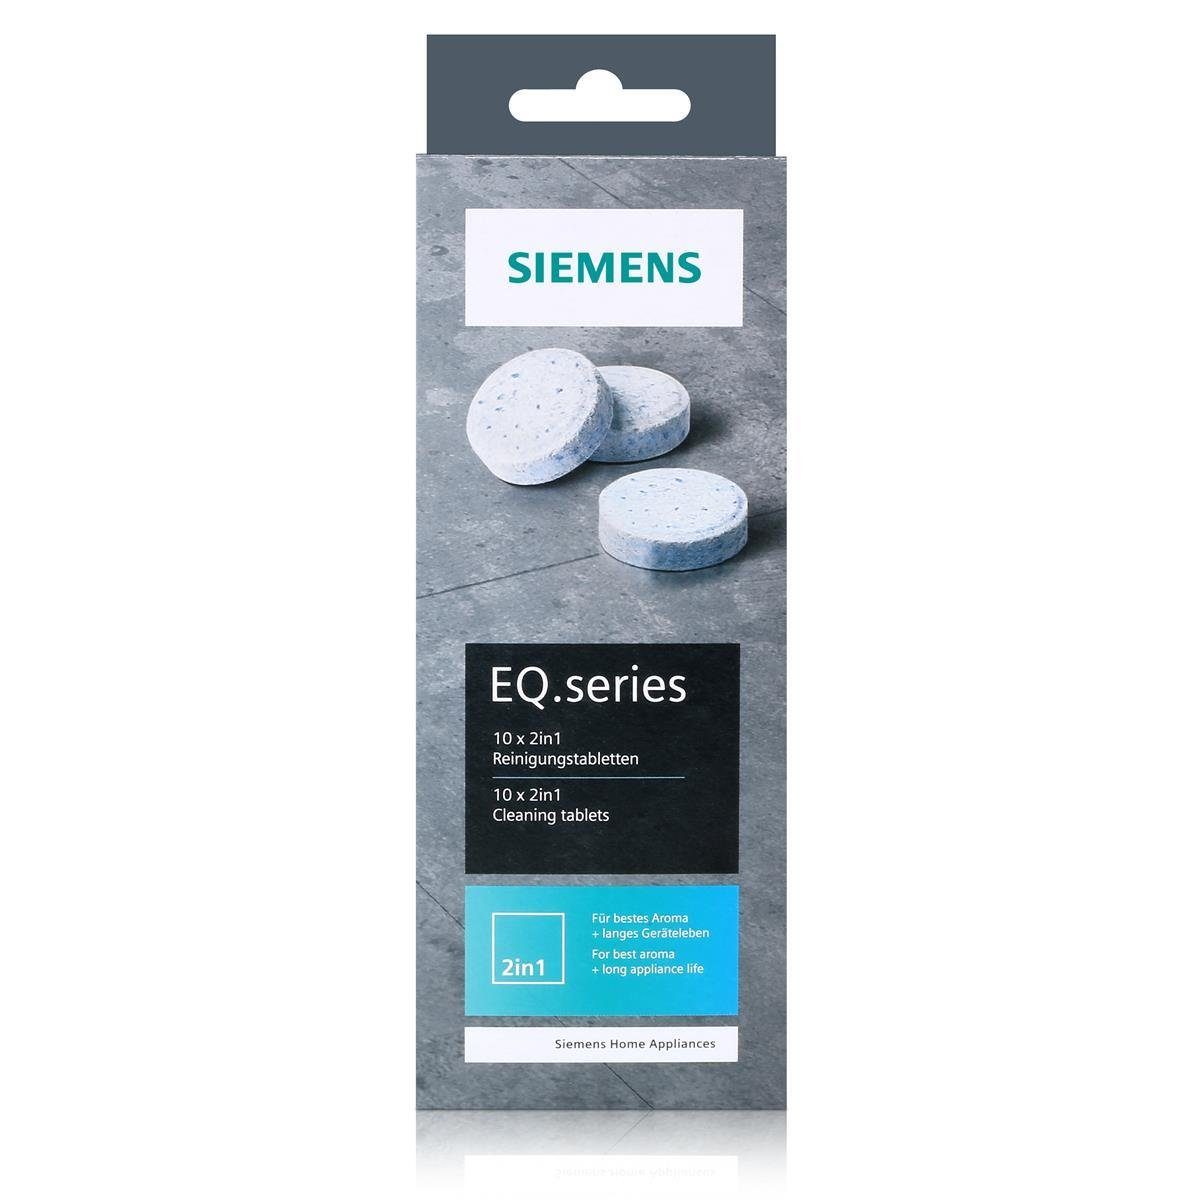 SIEMENS Siemens EQ.series Reinigungstabletten 22g Für Reinigungstabletten - bestes Aroma TZ80001A